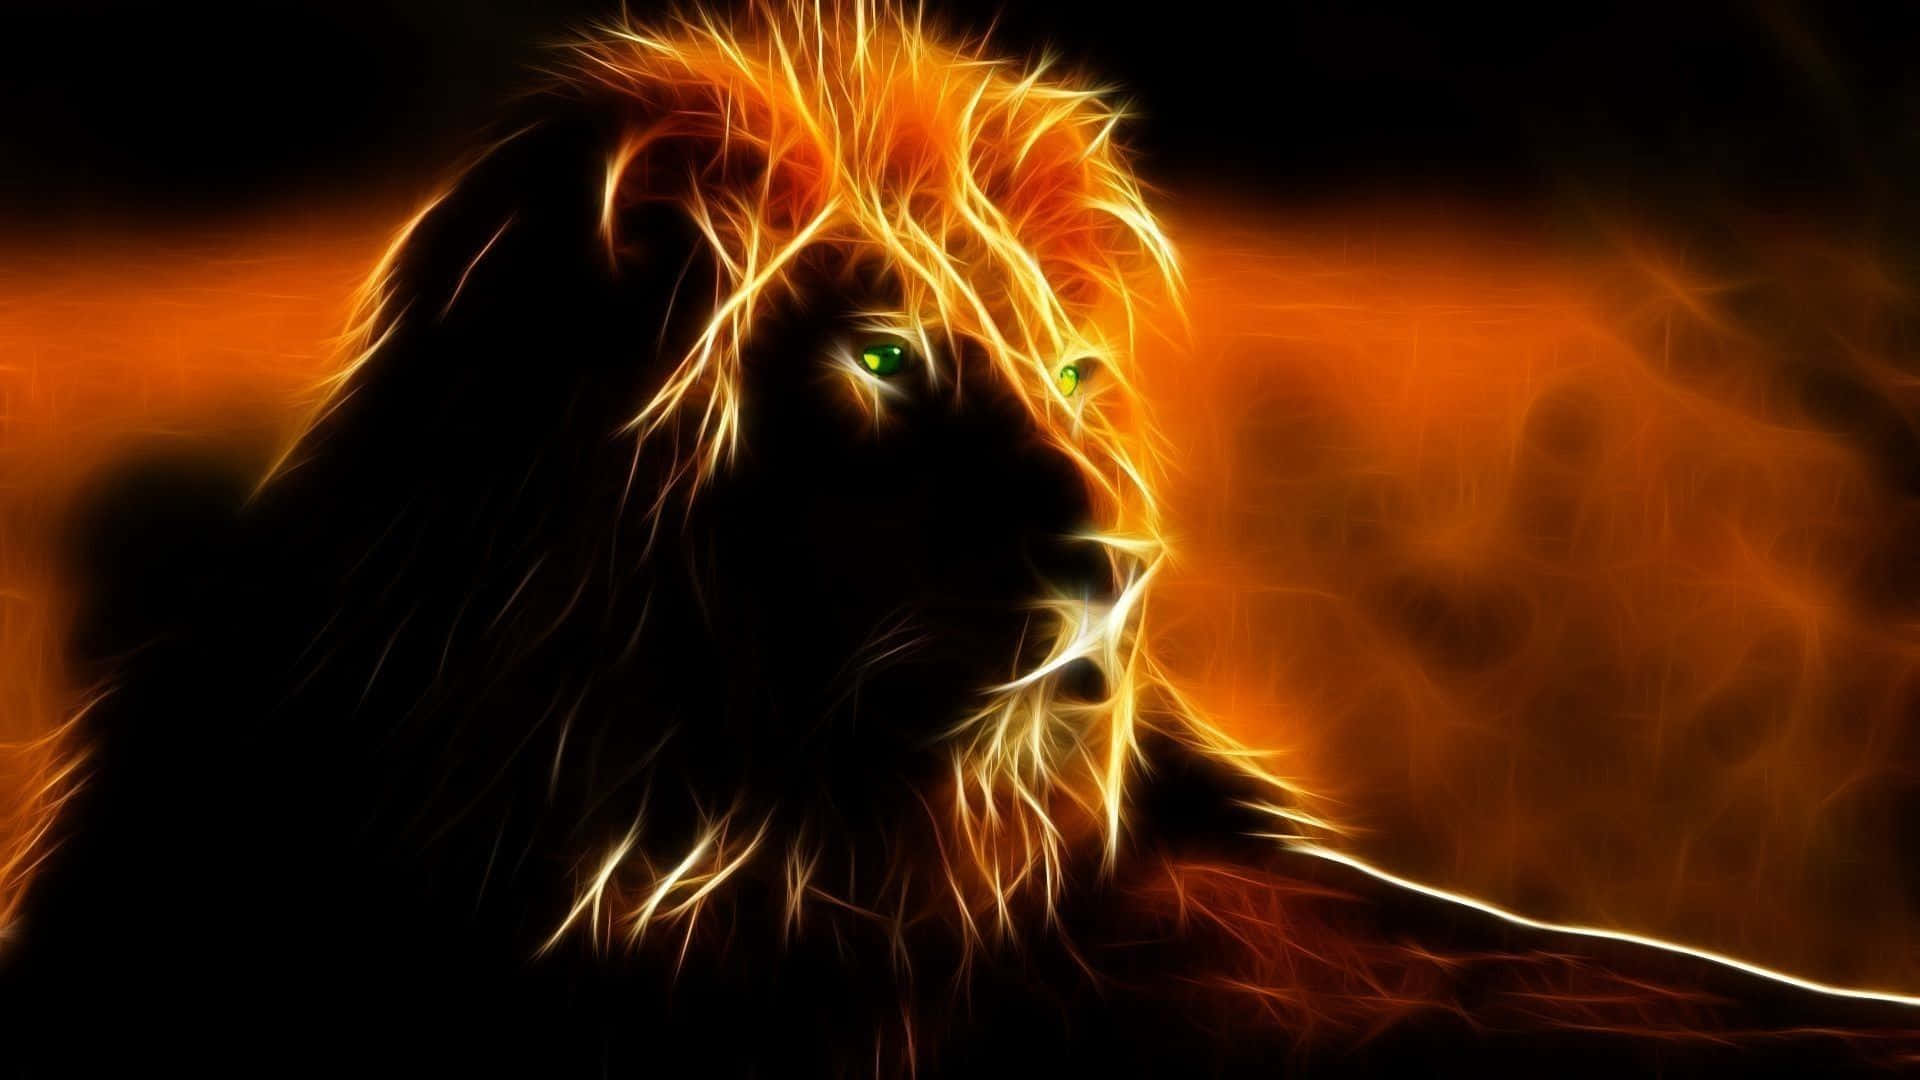 Majestic Lion Of Judah Roaring In The Wild Wallpaper